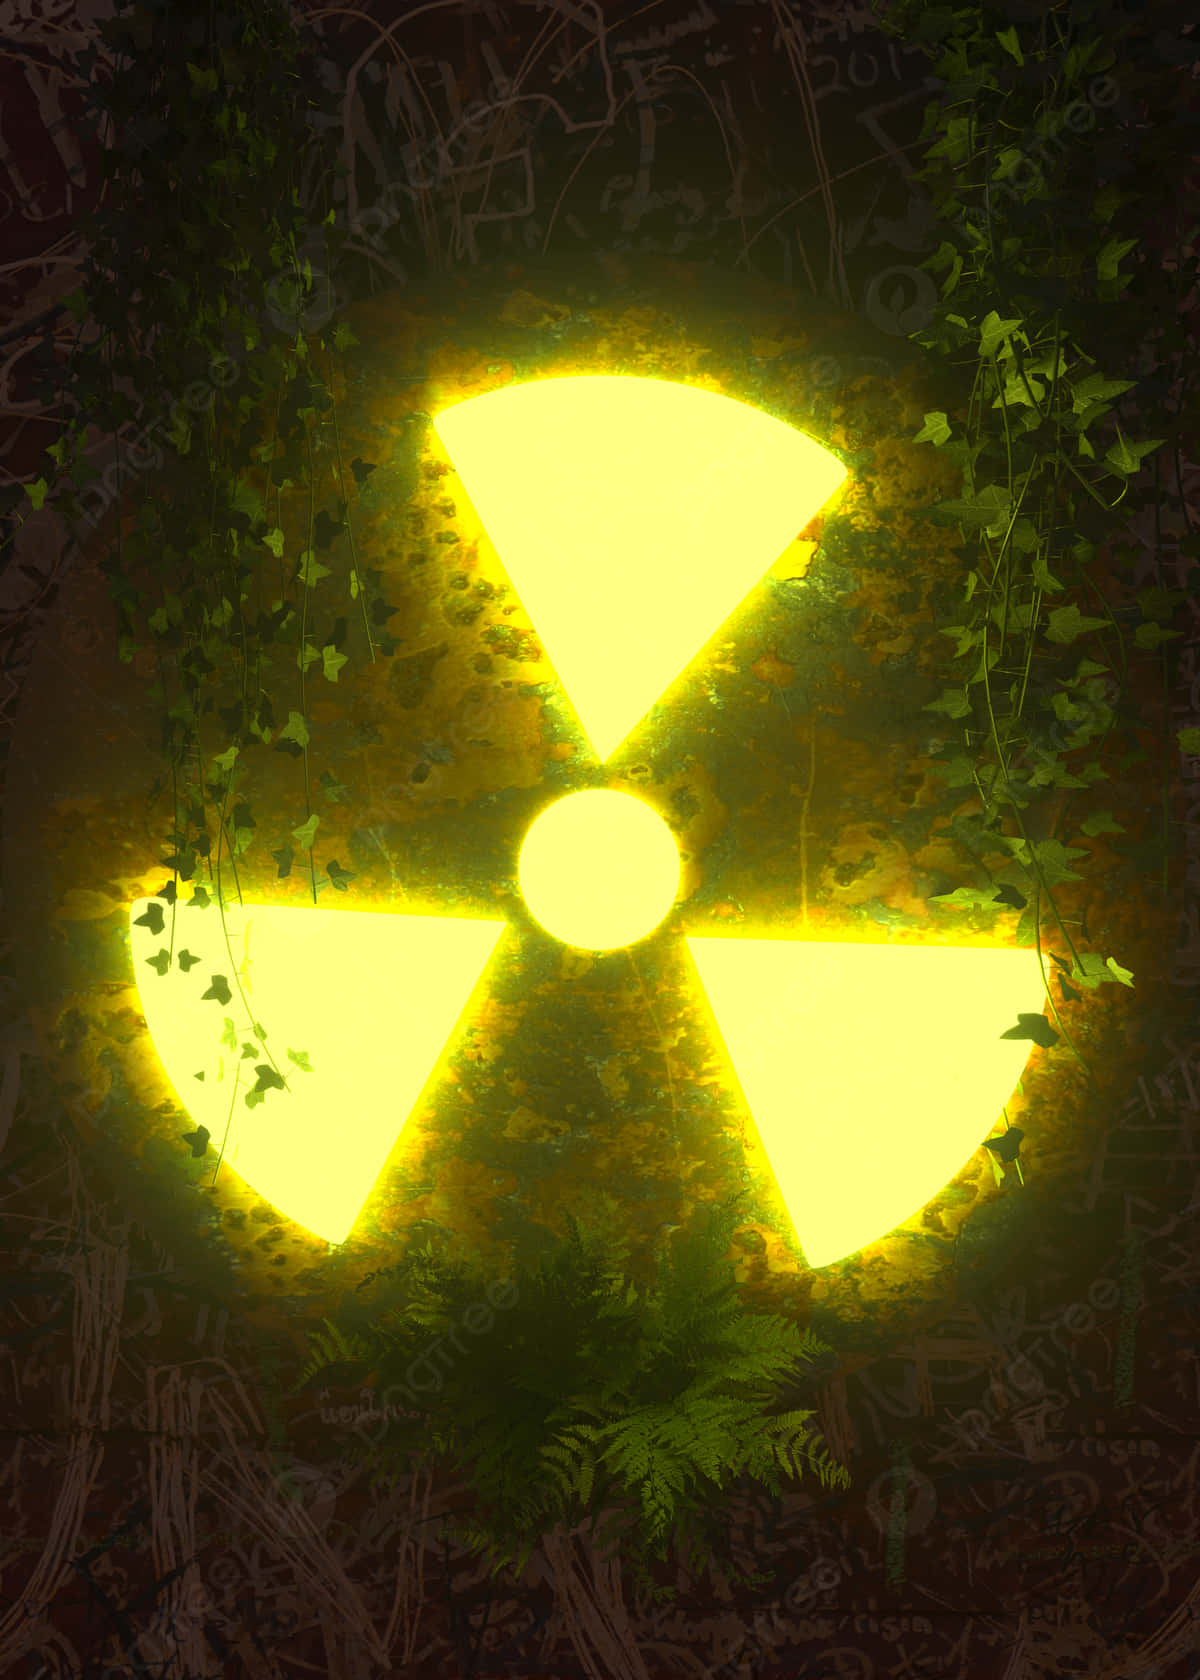 En gul radioaktiv skilt lyser op i den mørke hjørne af billedet Wallpaper